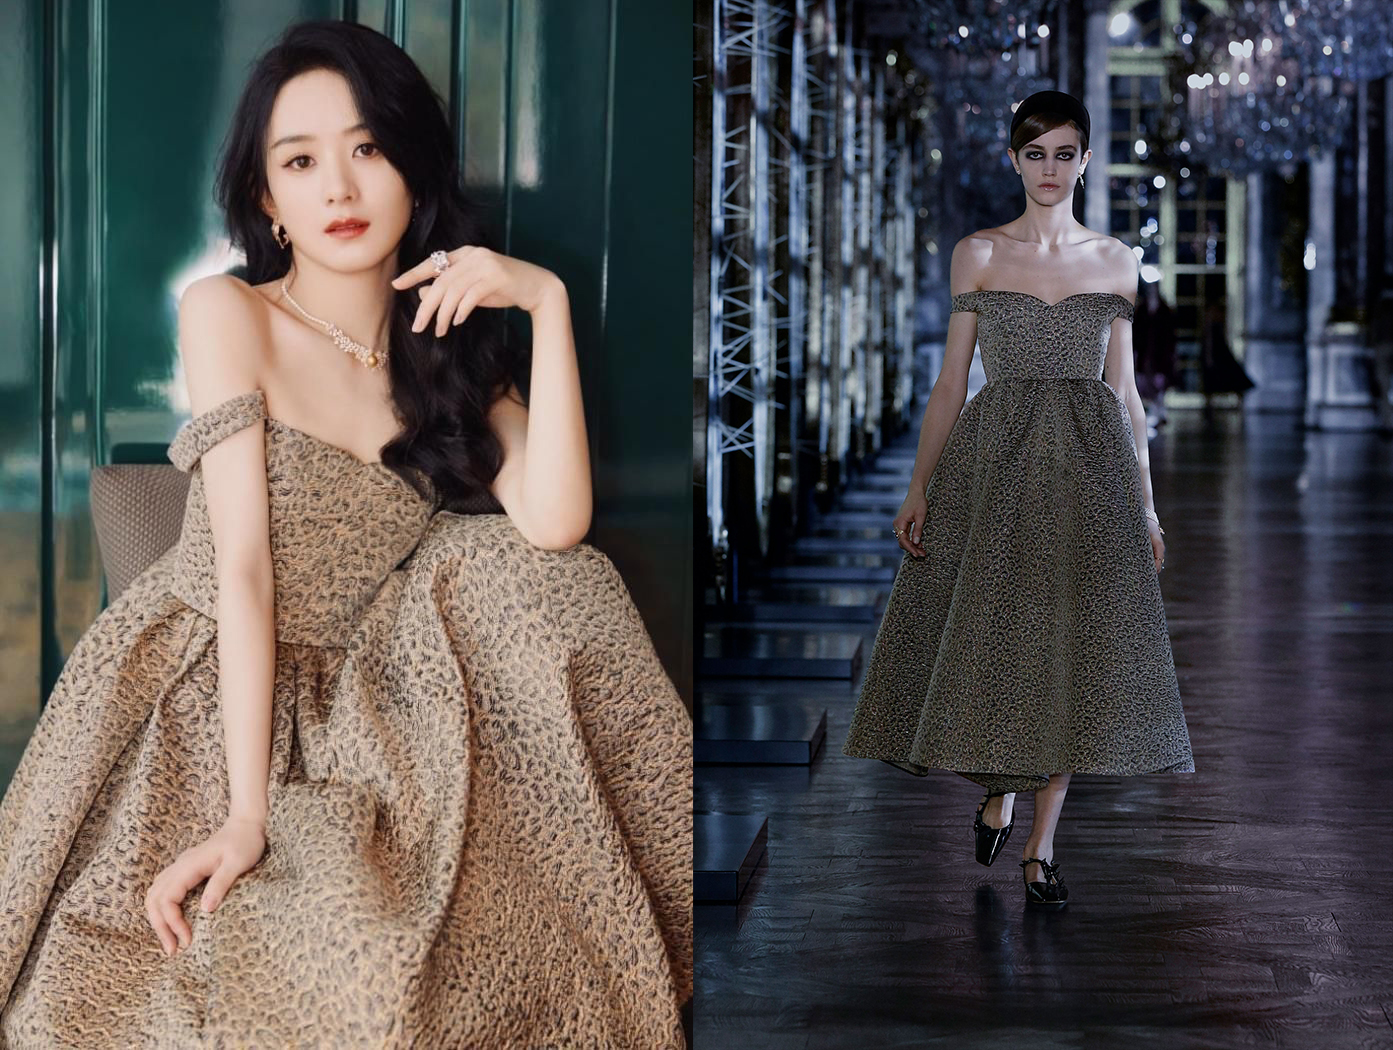 Mẫu váy da beo trong BST Dior Fall 2021 được Triệu Lệ Dĩnh mặc toát ra khí chất sang trọng, quý phái so với hình ảnh cá tính của người mẫu.